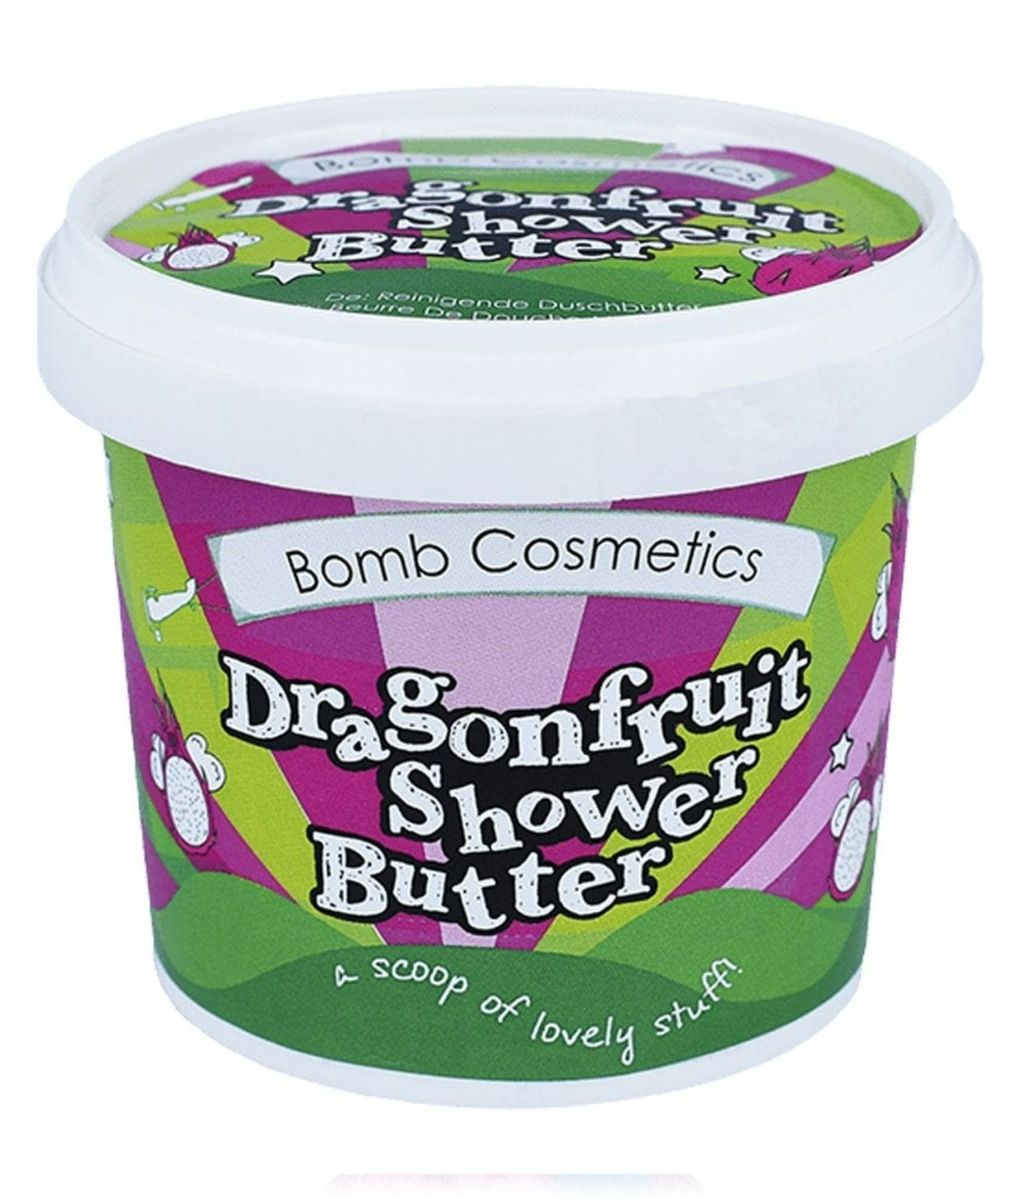 Bomb Cosmetics Dragonfruit очищающее масло для тела, 1 шт. цена и фото